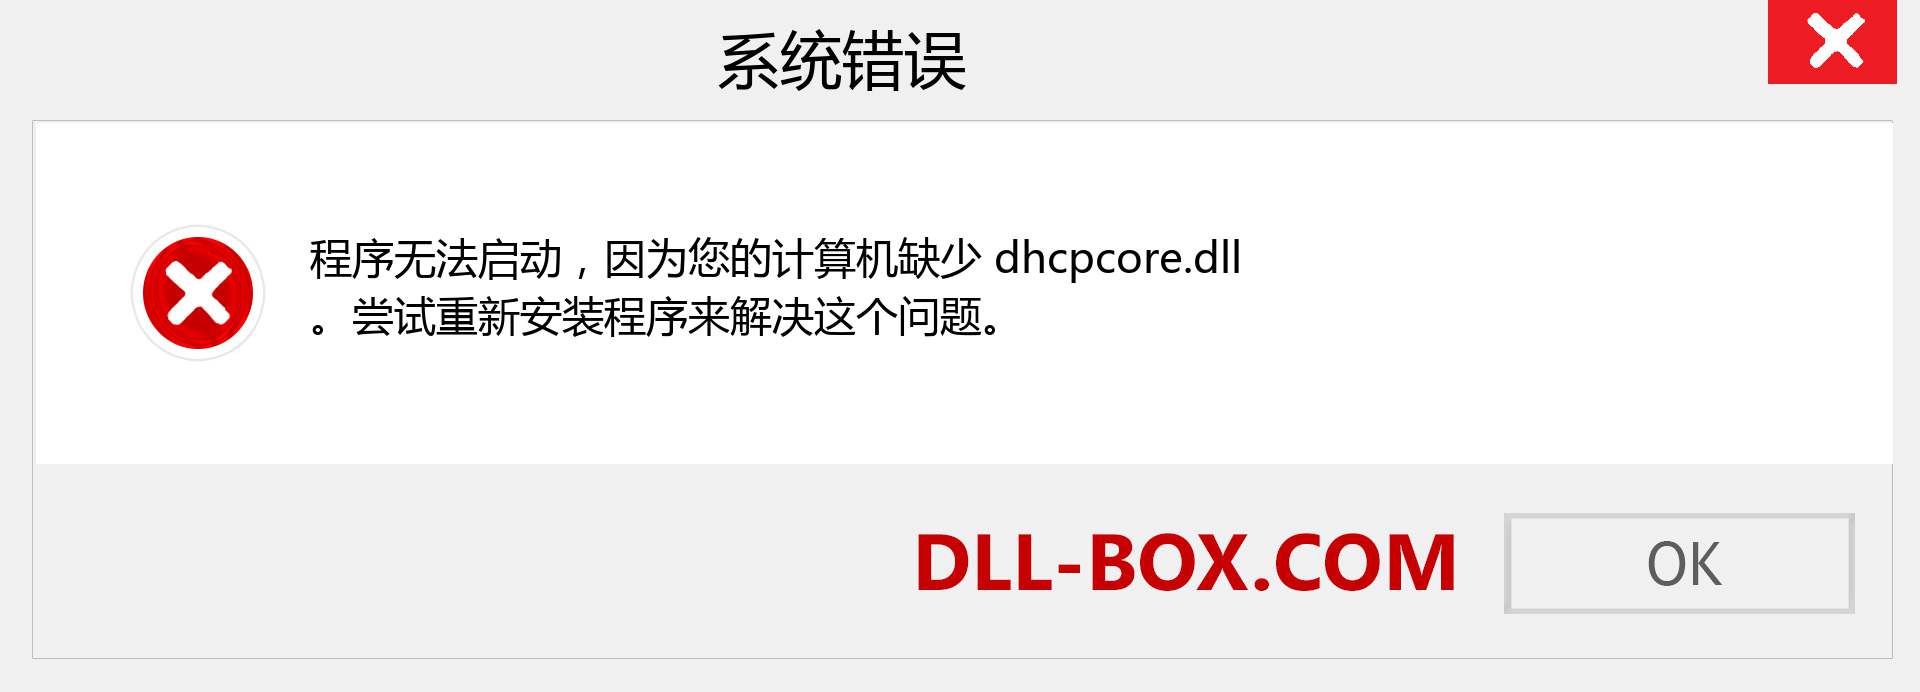 dhcpcore.dll 文件丢失？。 适用于 Windows 7、8、10 的下载 - 修复 Windows、照片、图像上的 dhcpcore dll 丢失错误